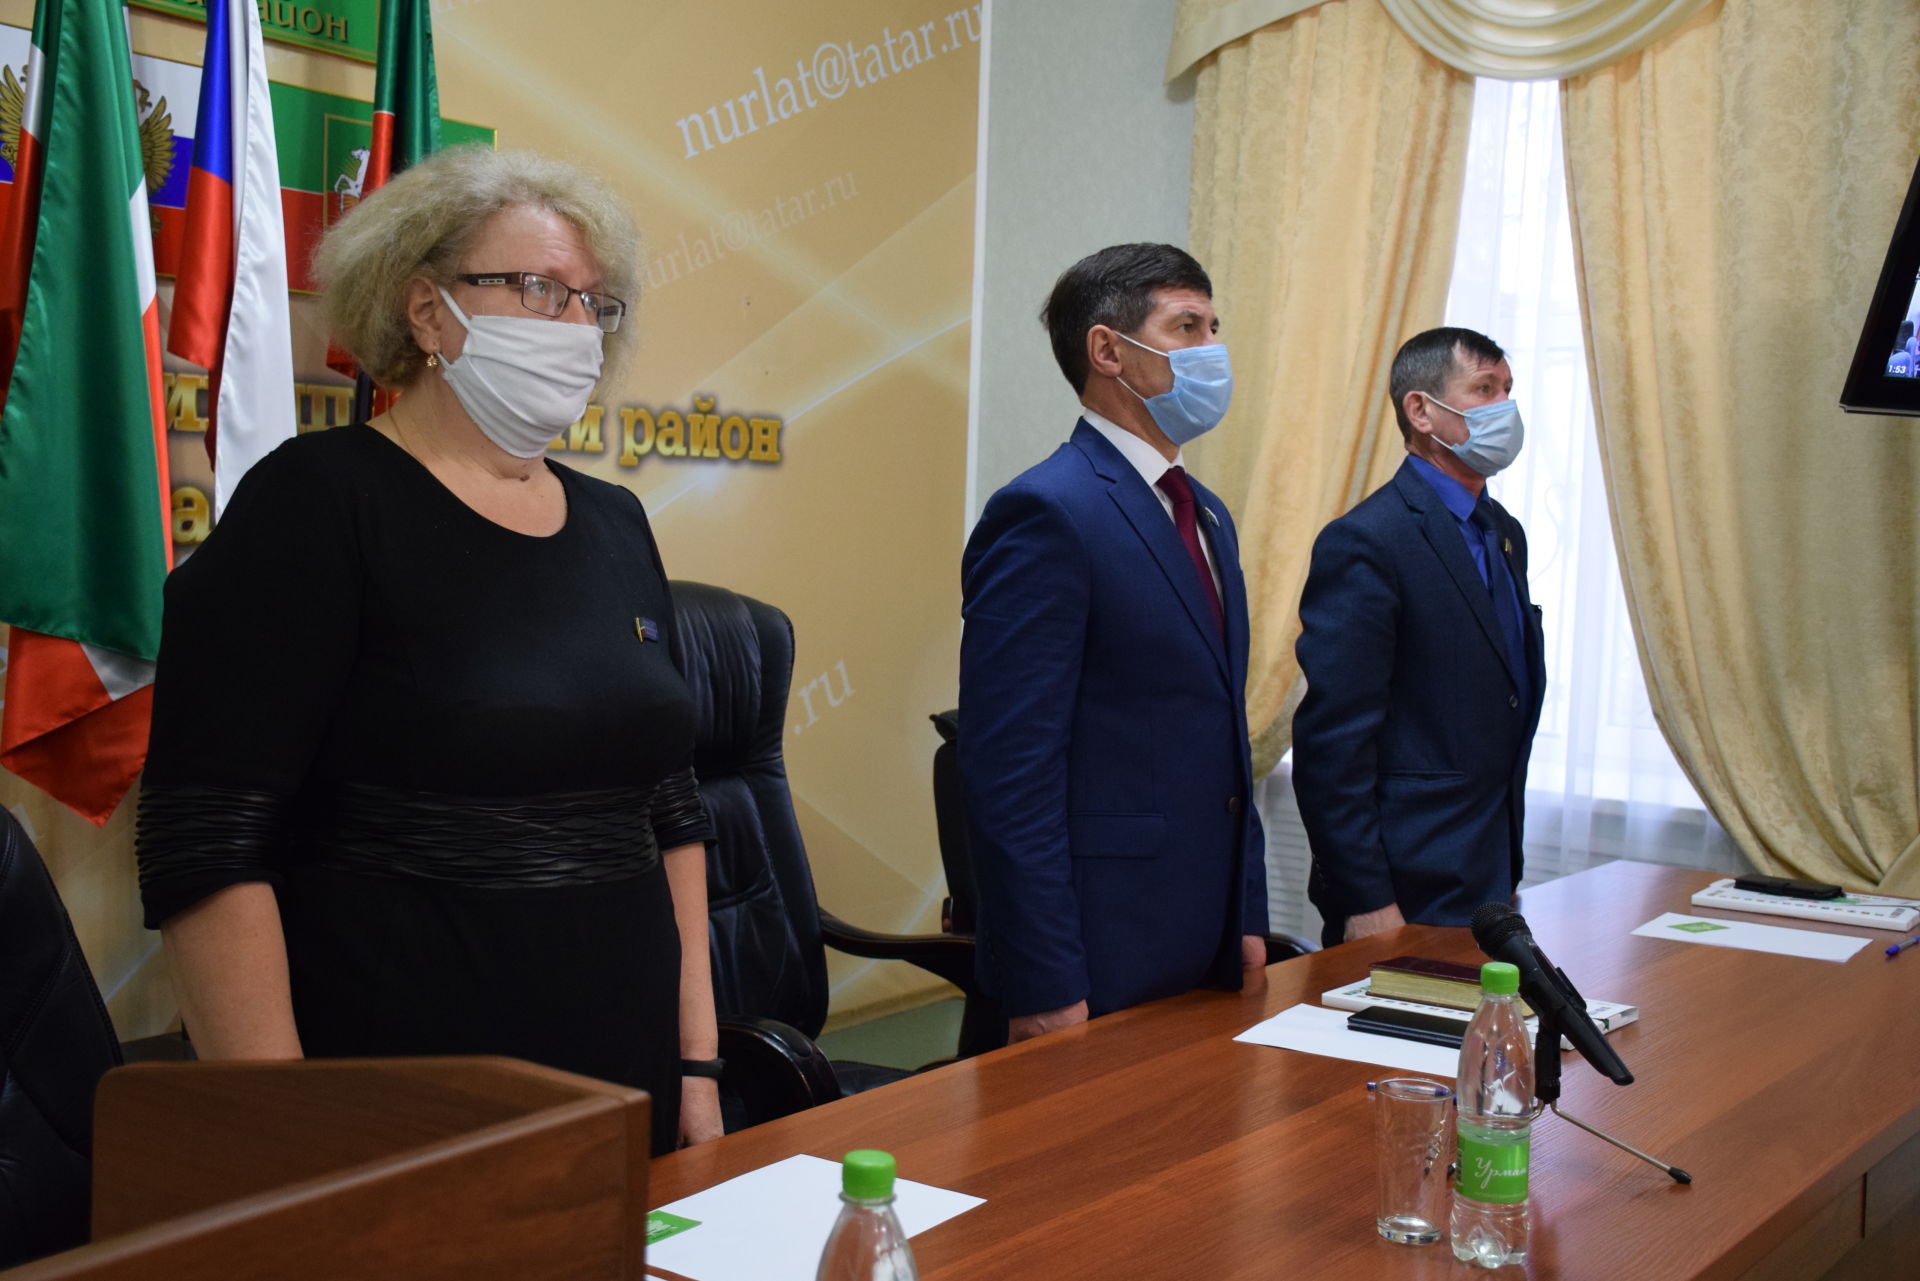 Нурлатцы приняли участие в работе XV Съезда муниципальных образований Татарстана